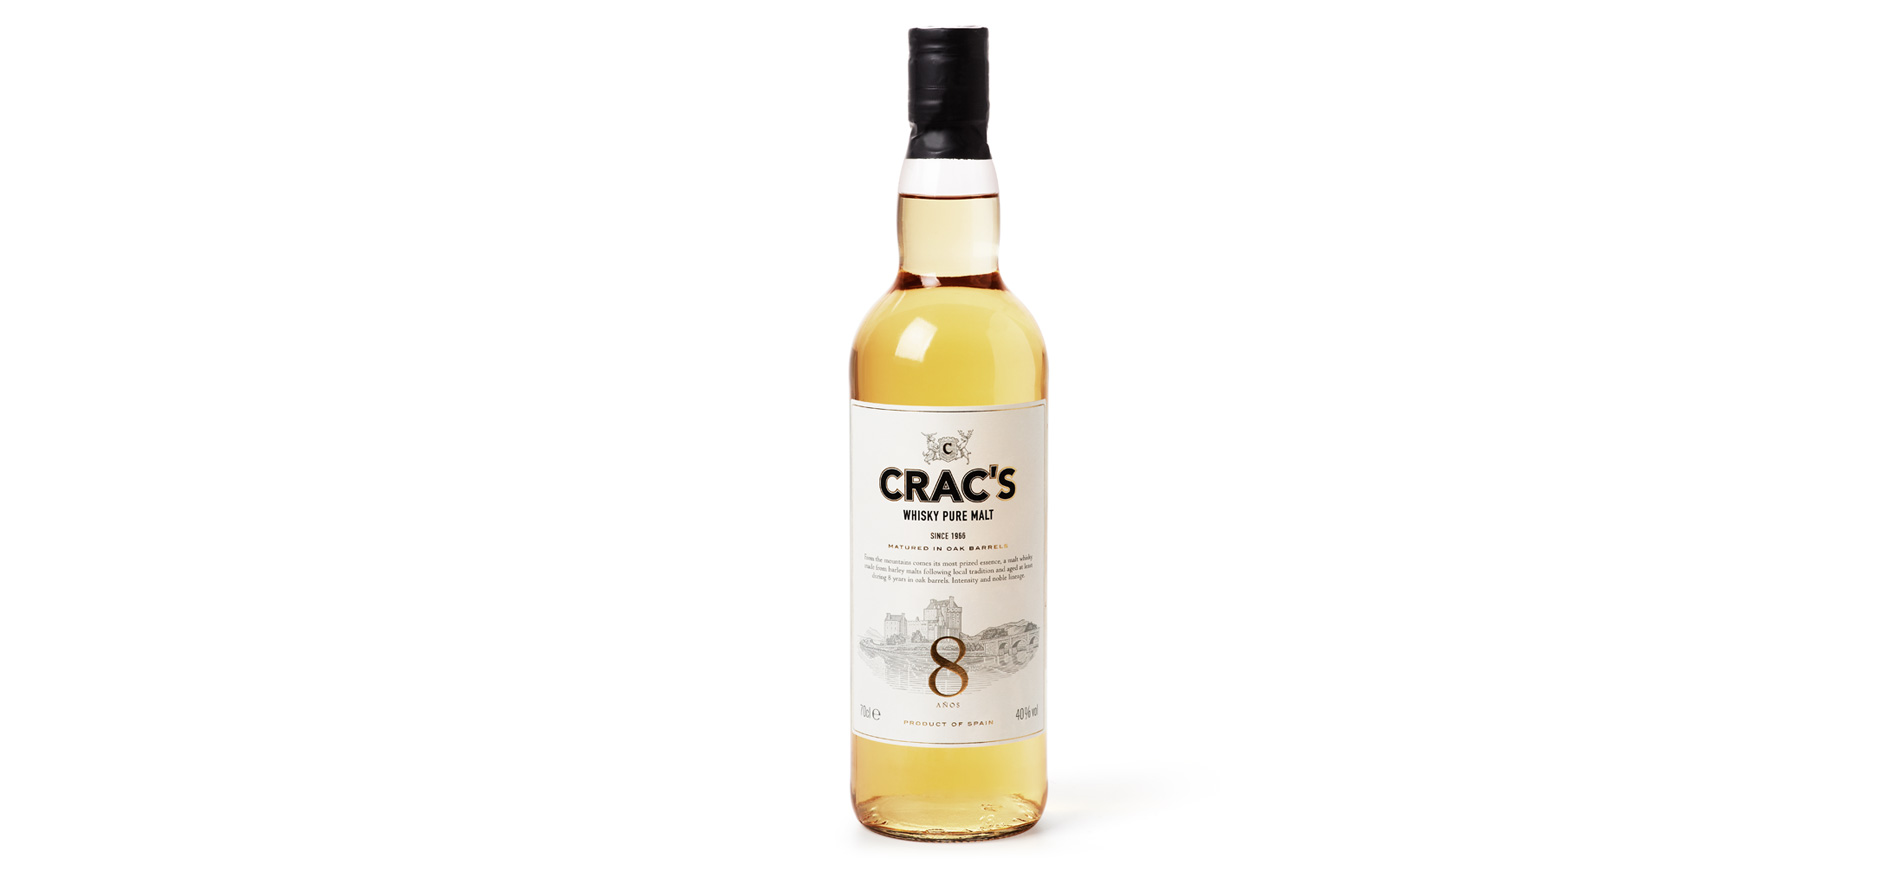 Diseño del Packaging de Whisky Crac’s 8 años de Sorel por Puigdemont Roca Design Agency